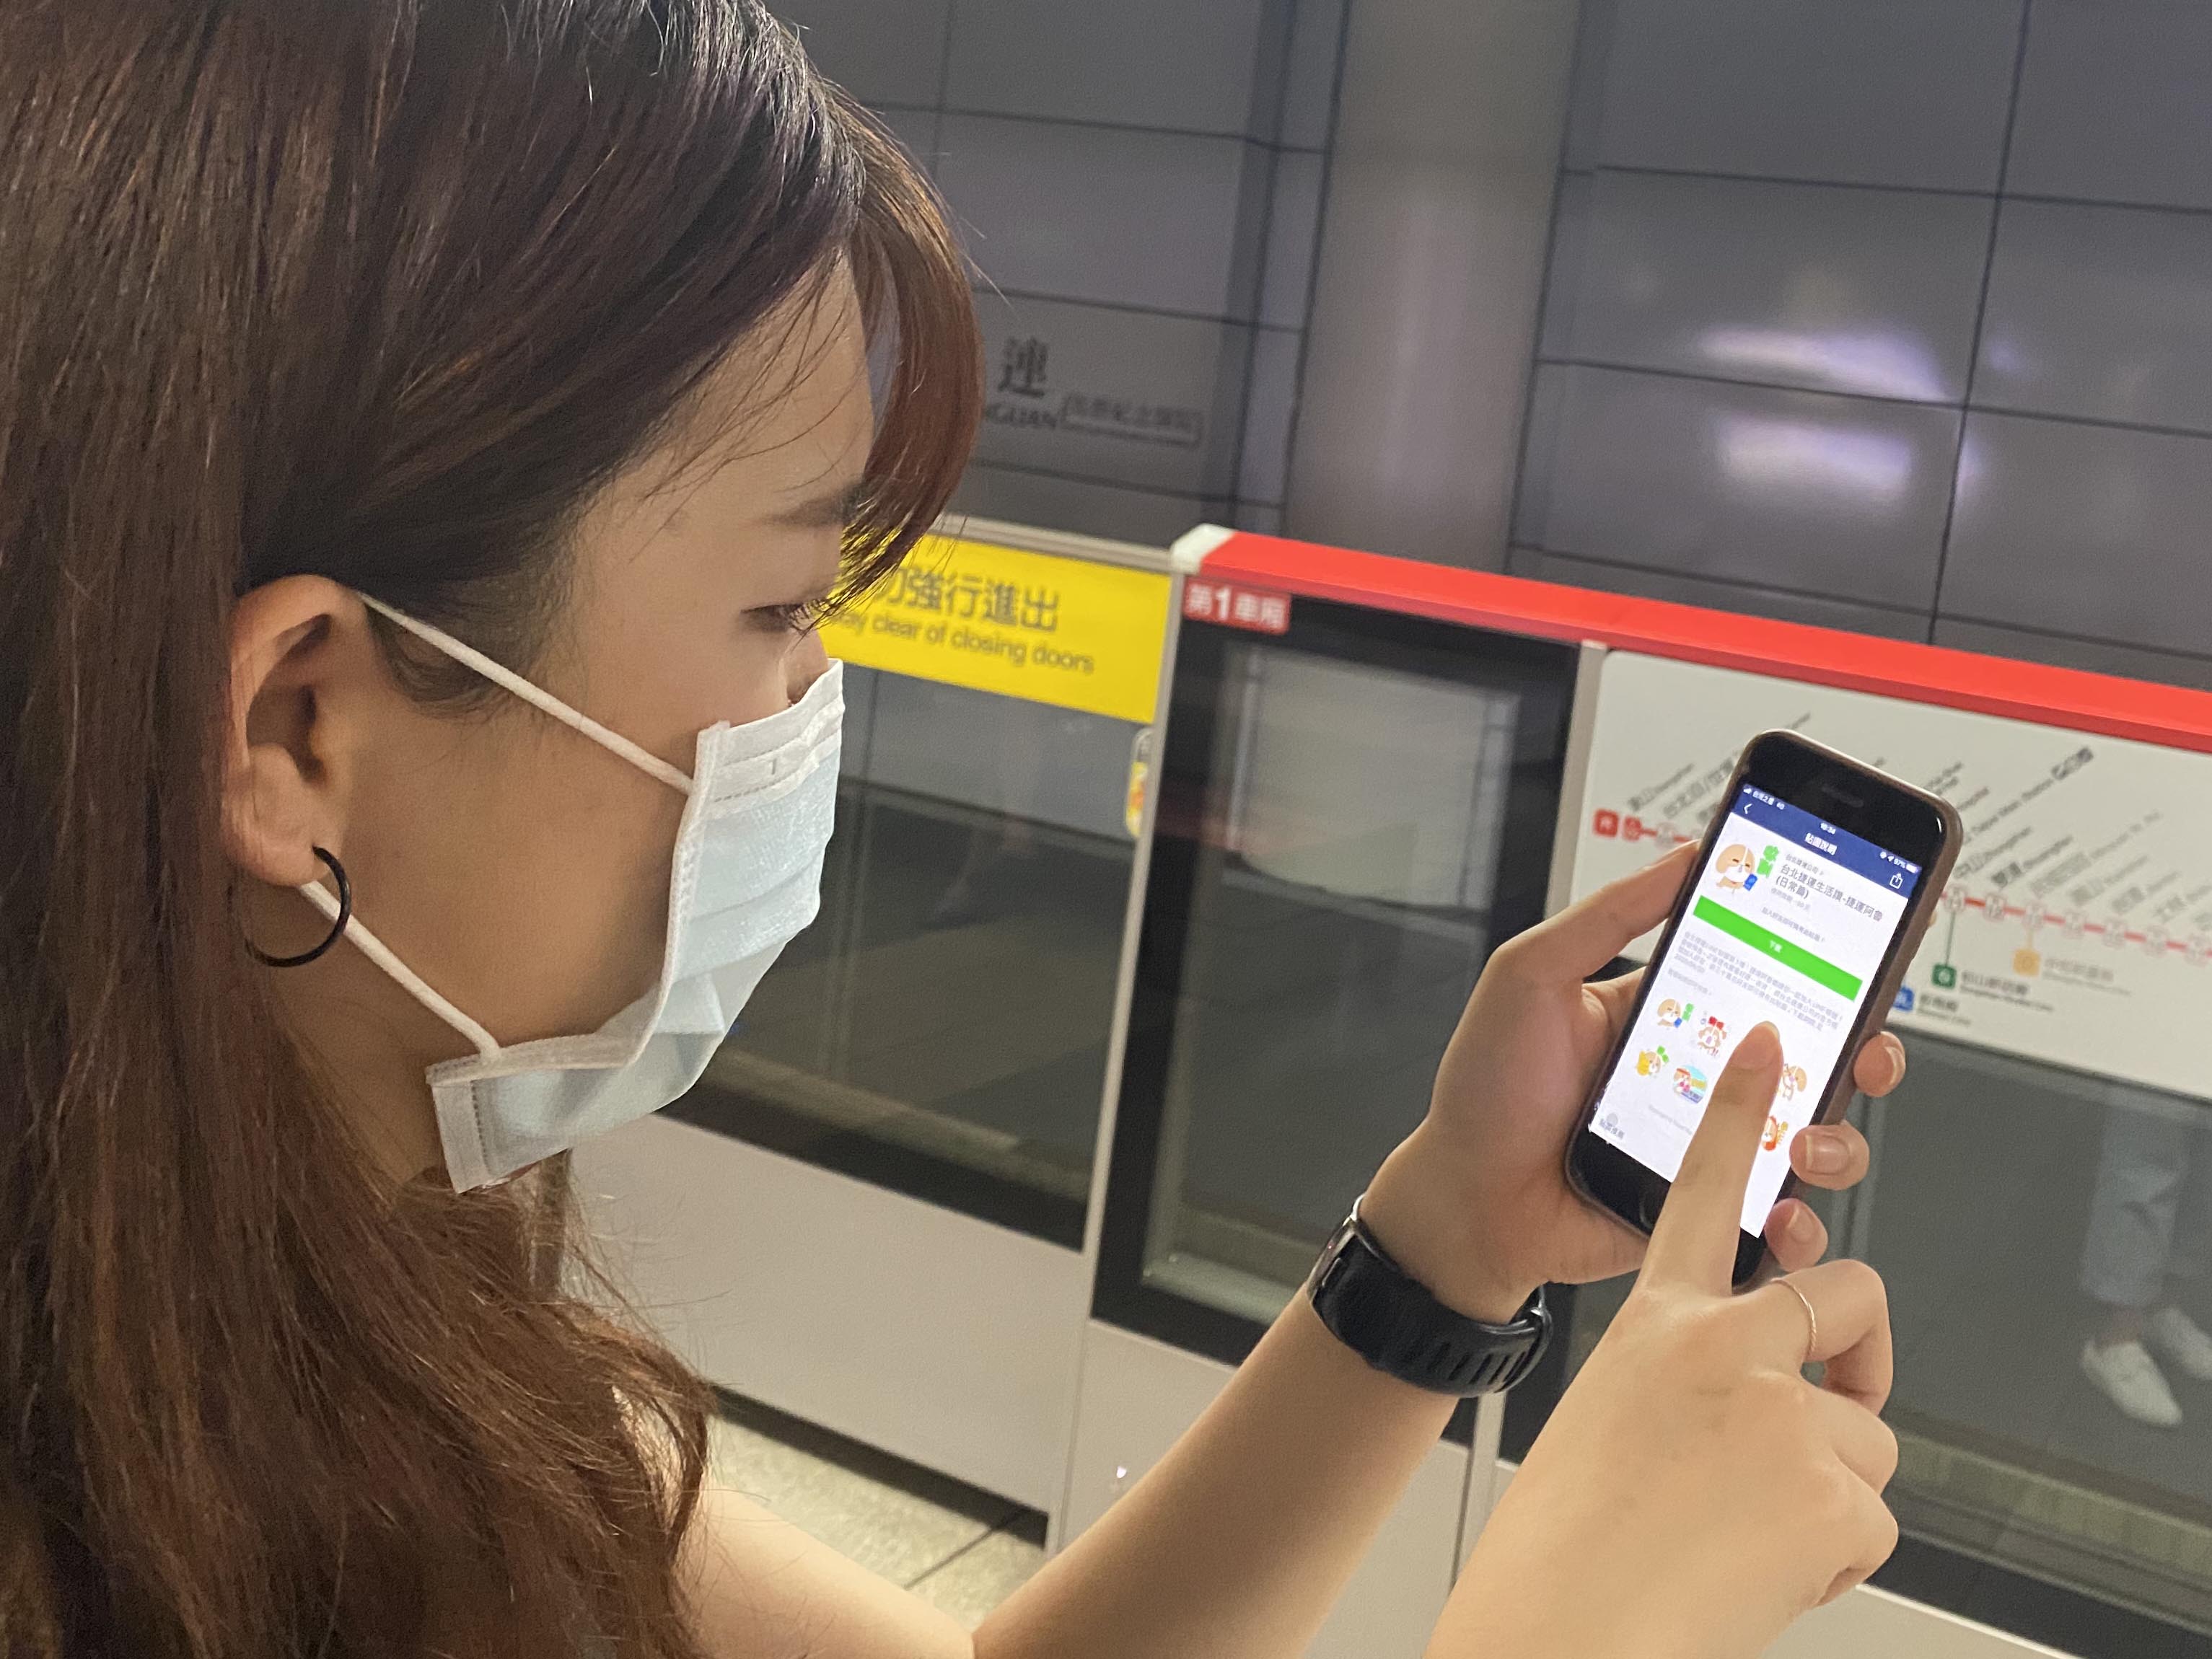 歡迎加入台北捷運 FB粉絲專頁 獲得第一手好康資訊